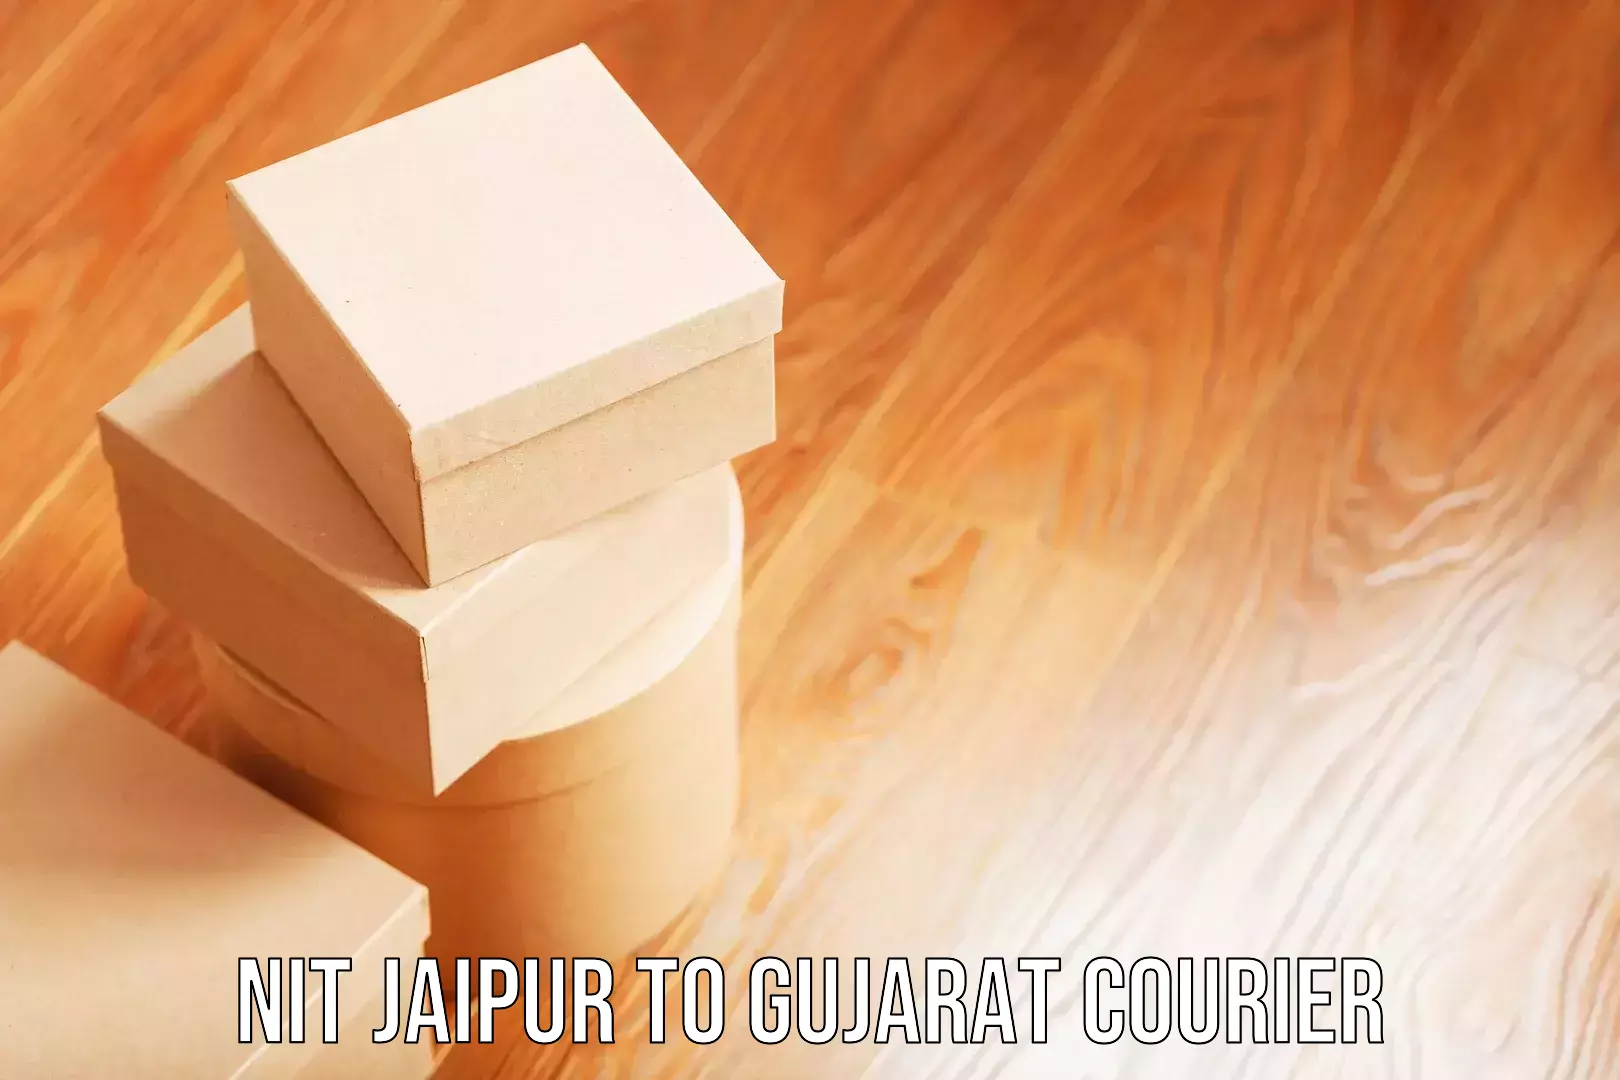 Digital baggage courier NIT Jaipur to NIT Surat